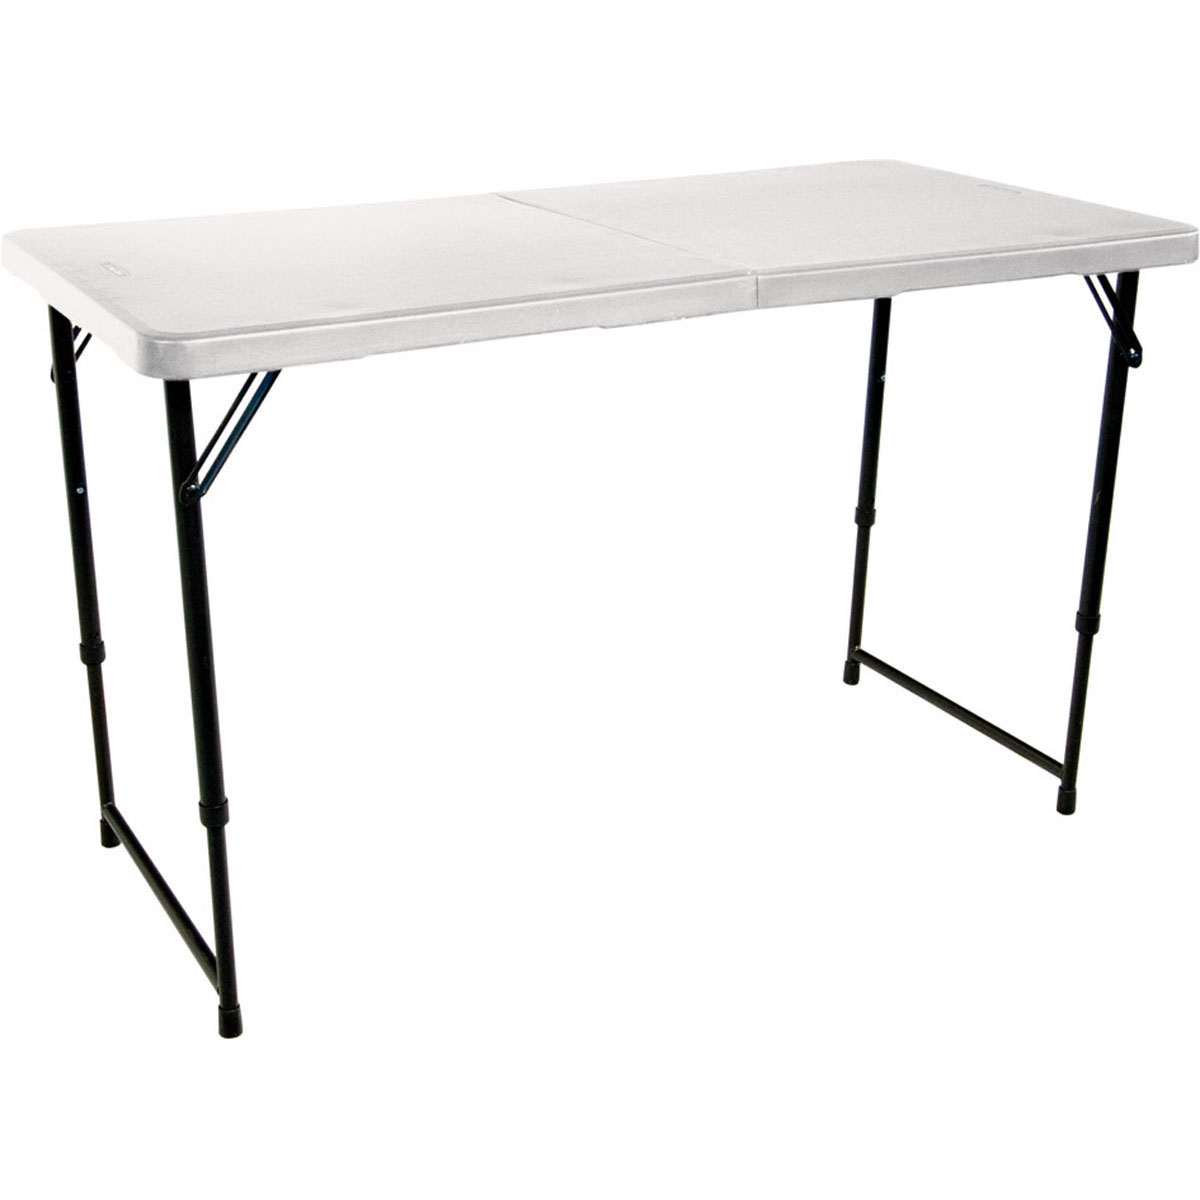 Lifetime Blow Mould Folding Table 121cm